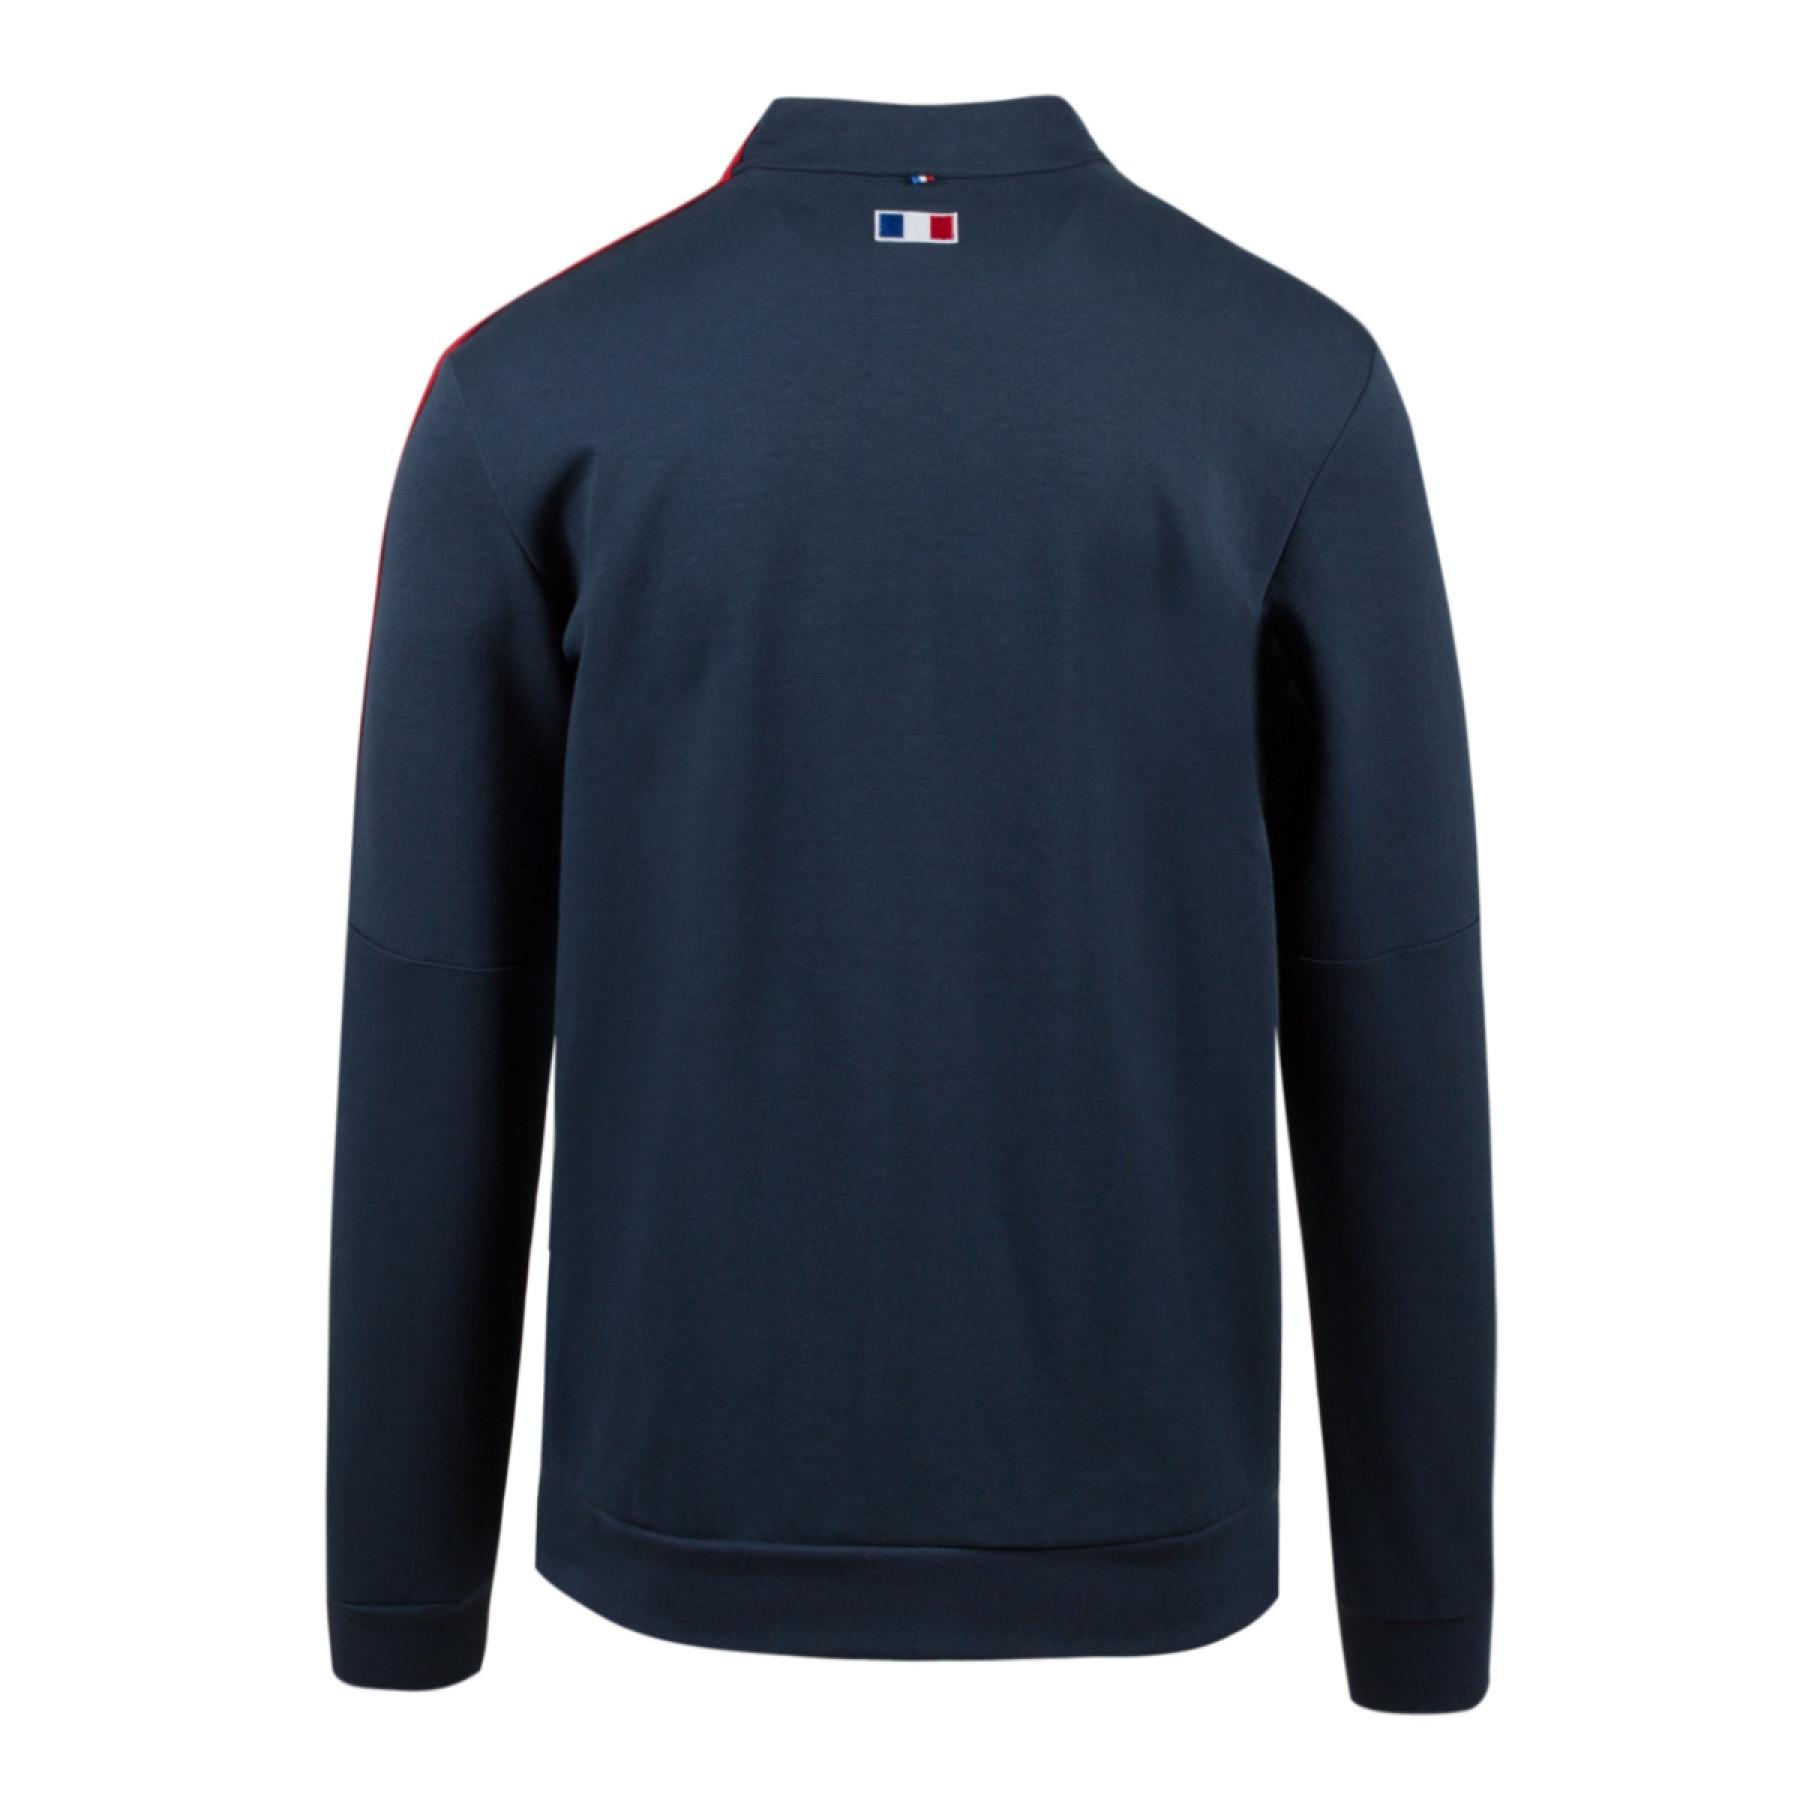 Sweatshirt zip p p XV de France